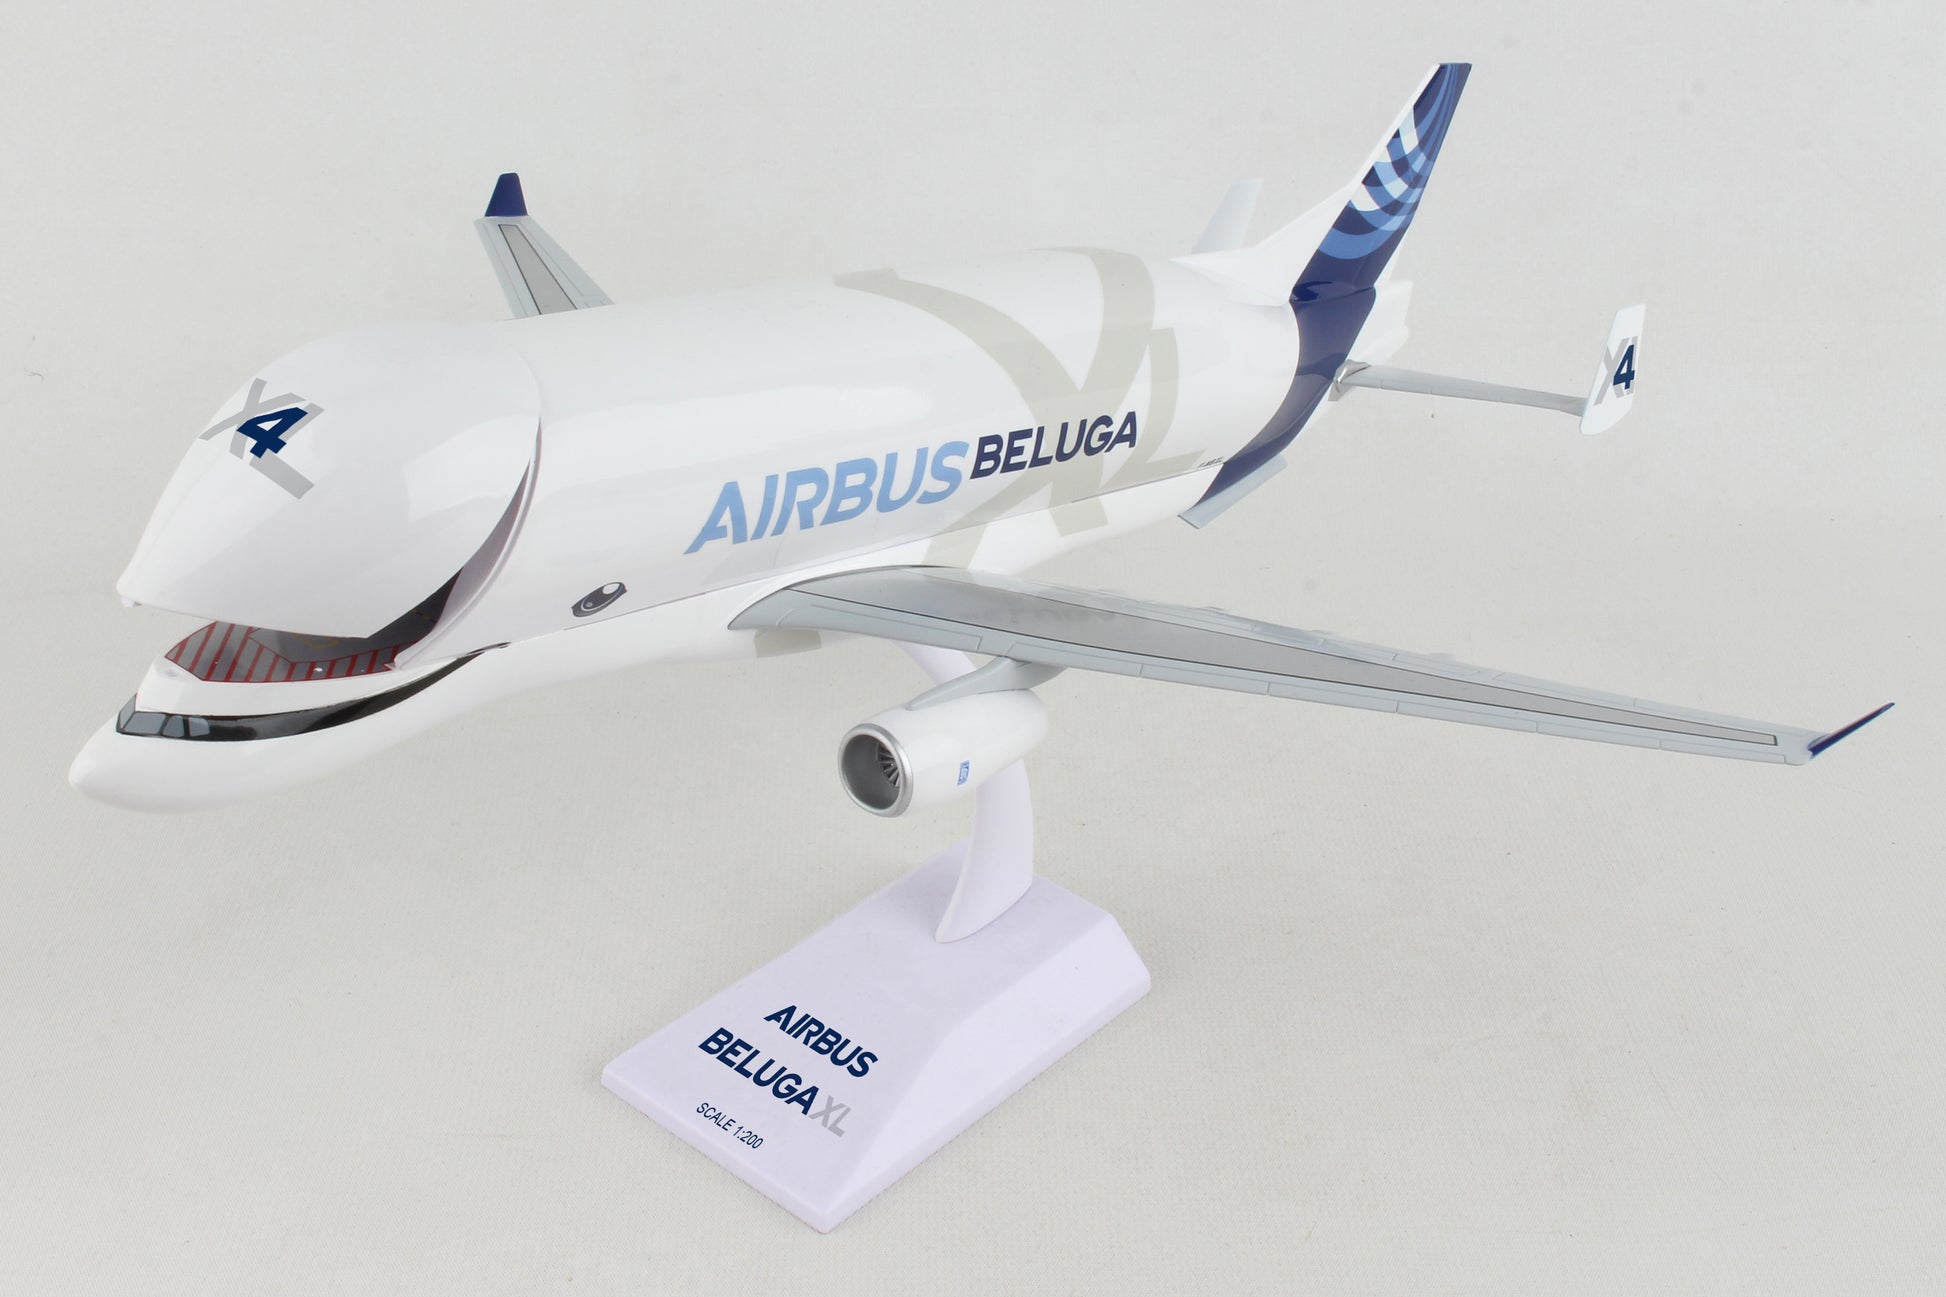 Airbus ベルーガ: スケール1/100 とっておきし福袋